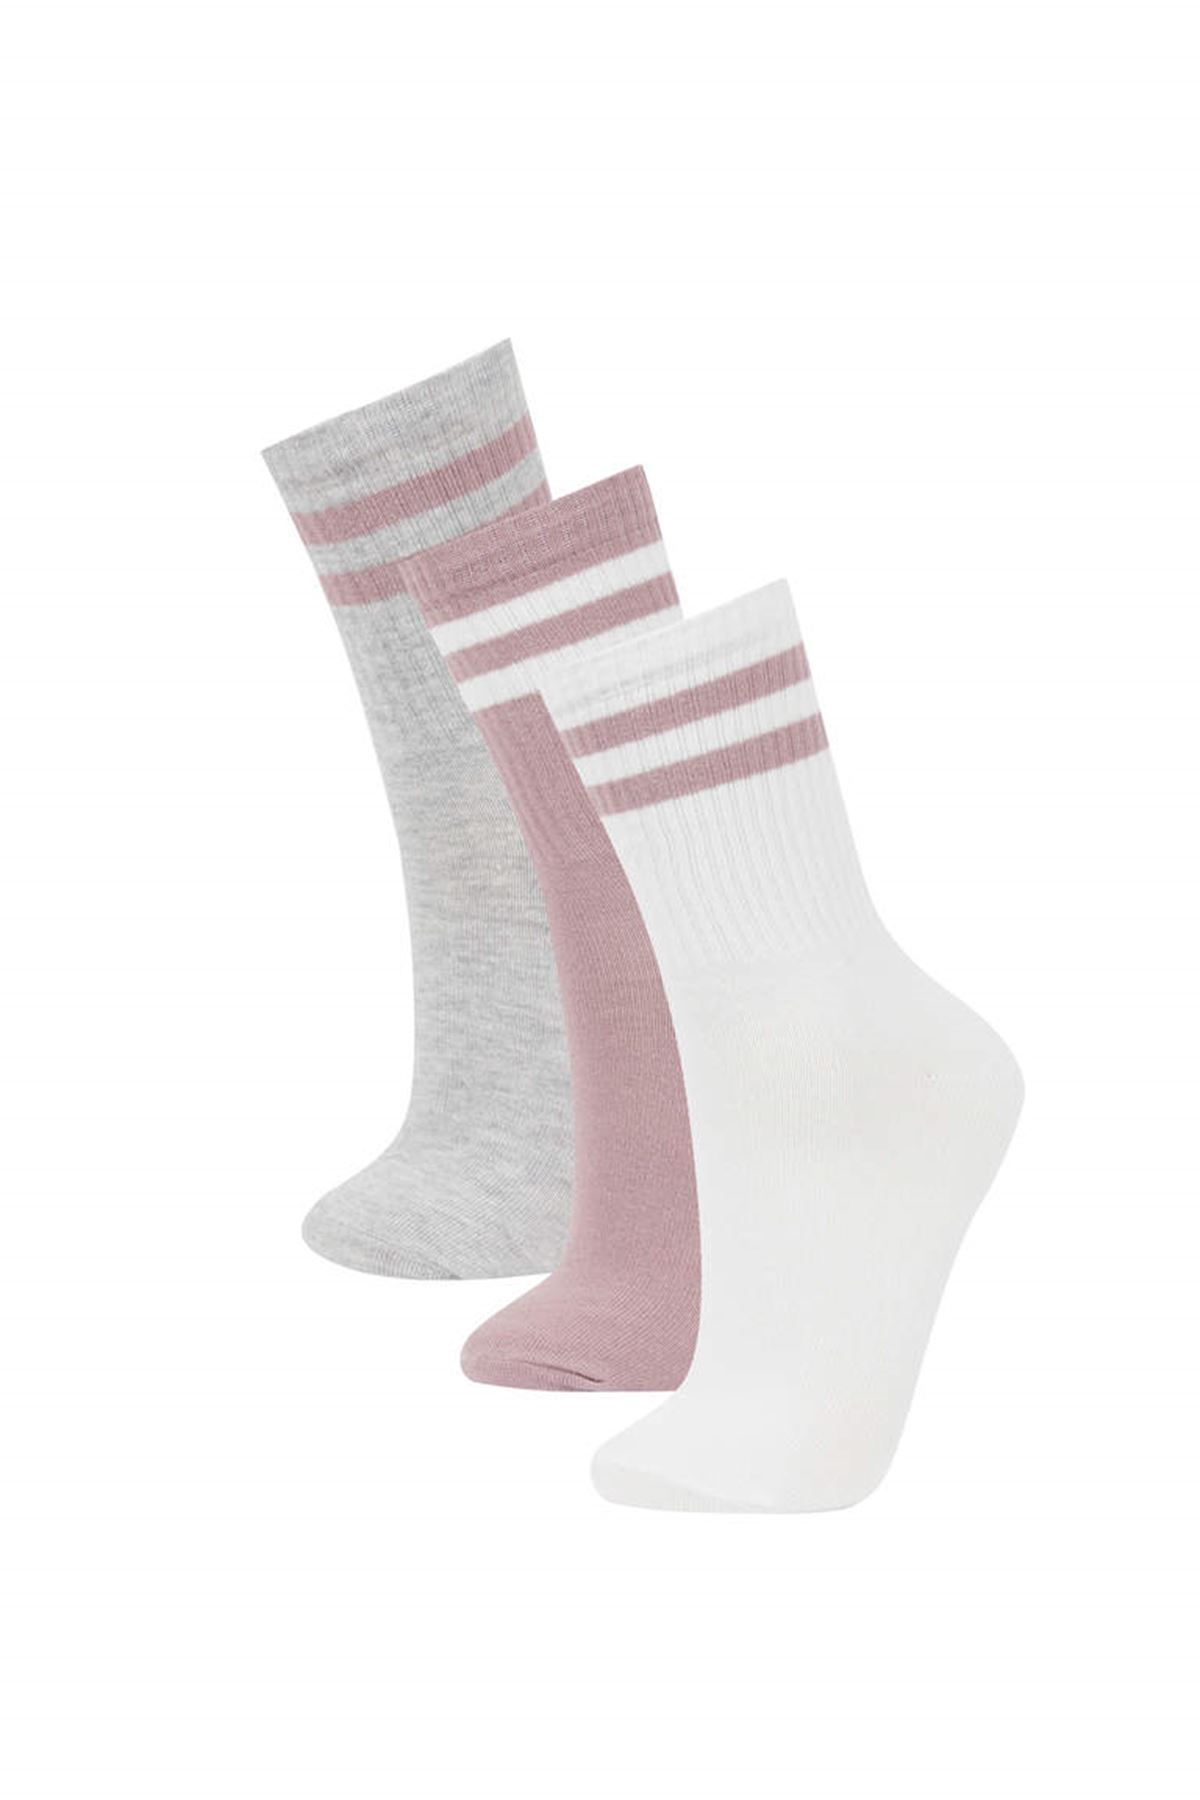 Defacto Kadın Çok Renkli 3'lü Çorap - Y7559AZ/KR1